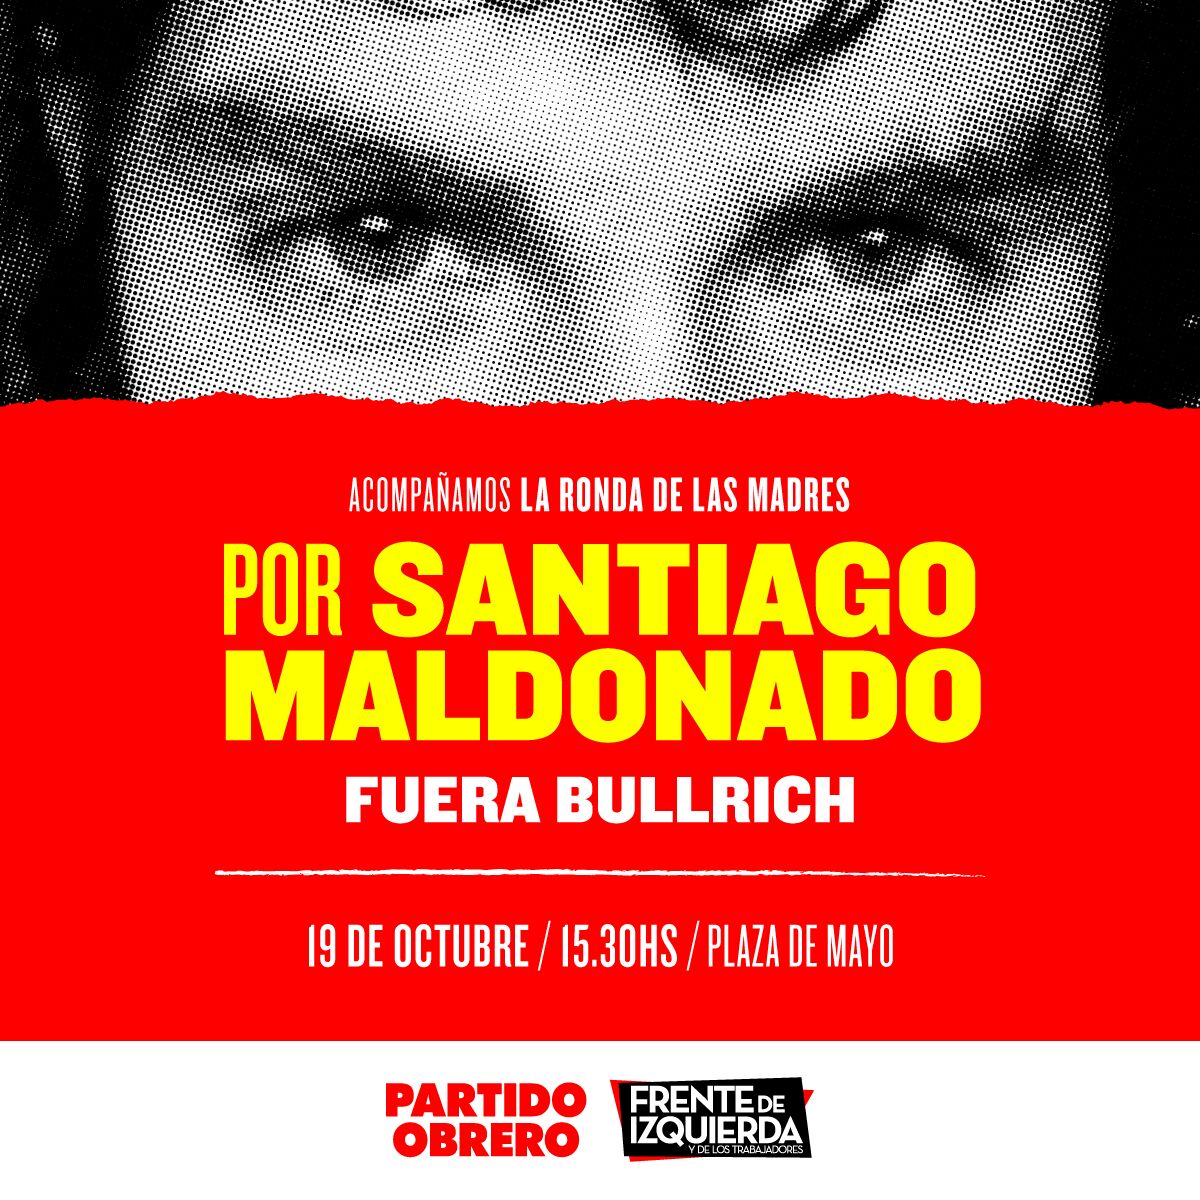 Santiago Maldonado: El Frente de Izquierda se moviliza por justicia y por Fuera Bullrich